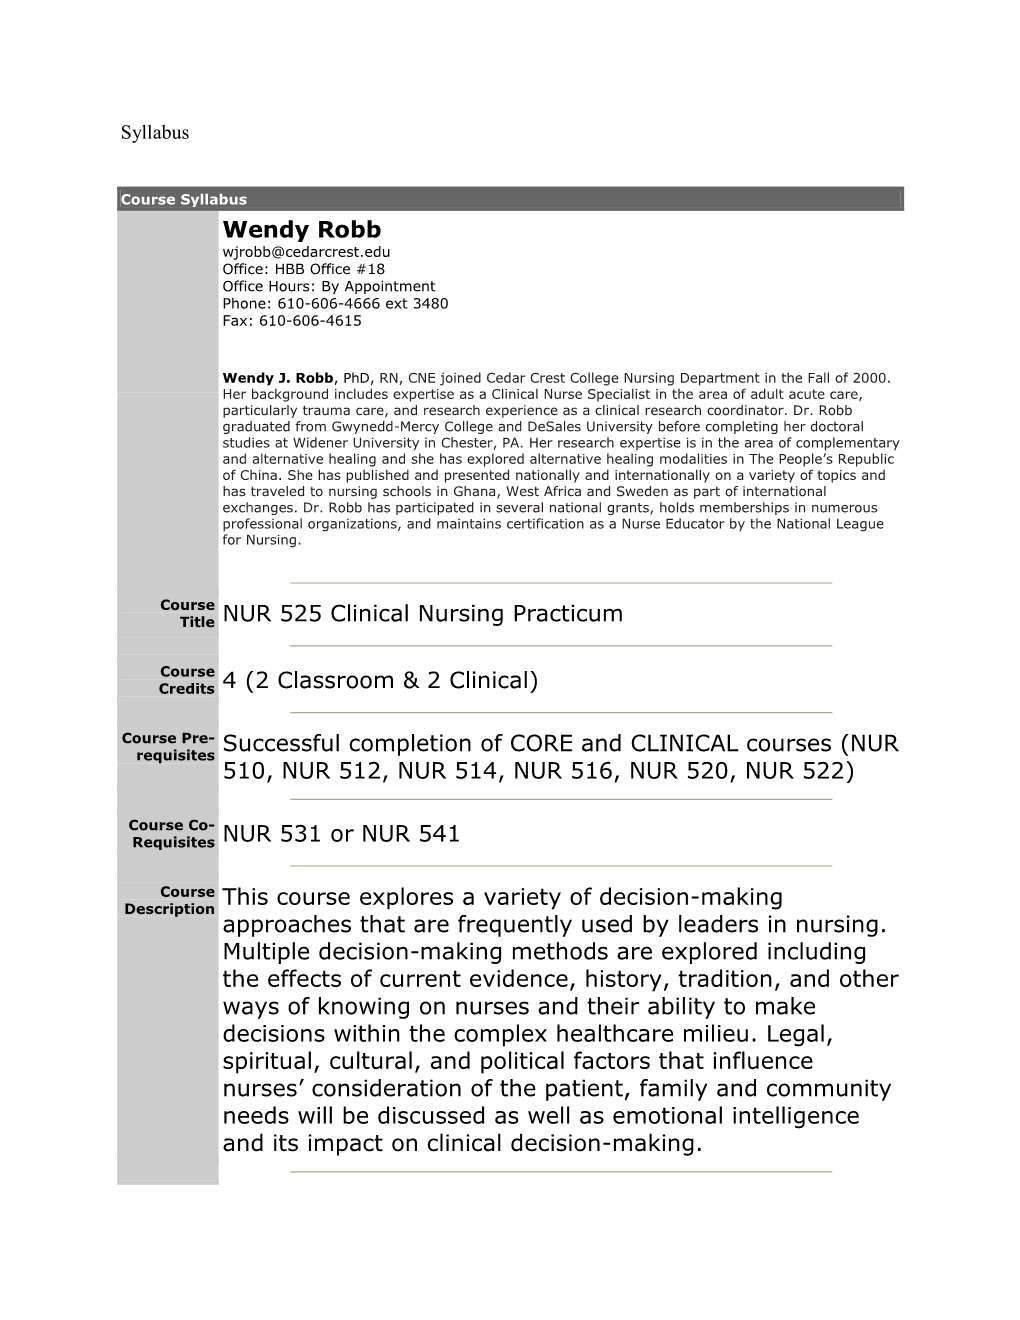 Wendy Robb Title NUR 525 Clinical Nursing